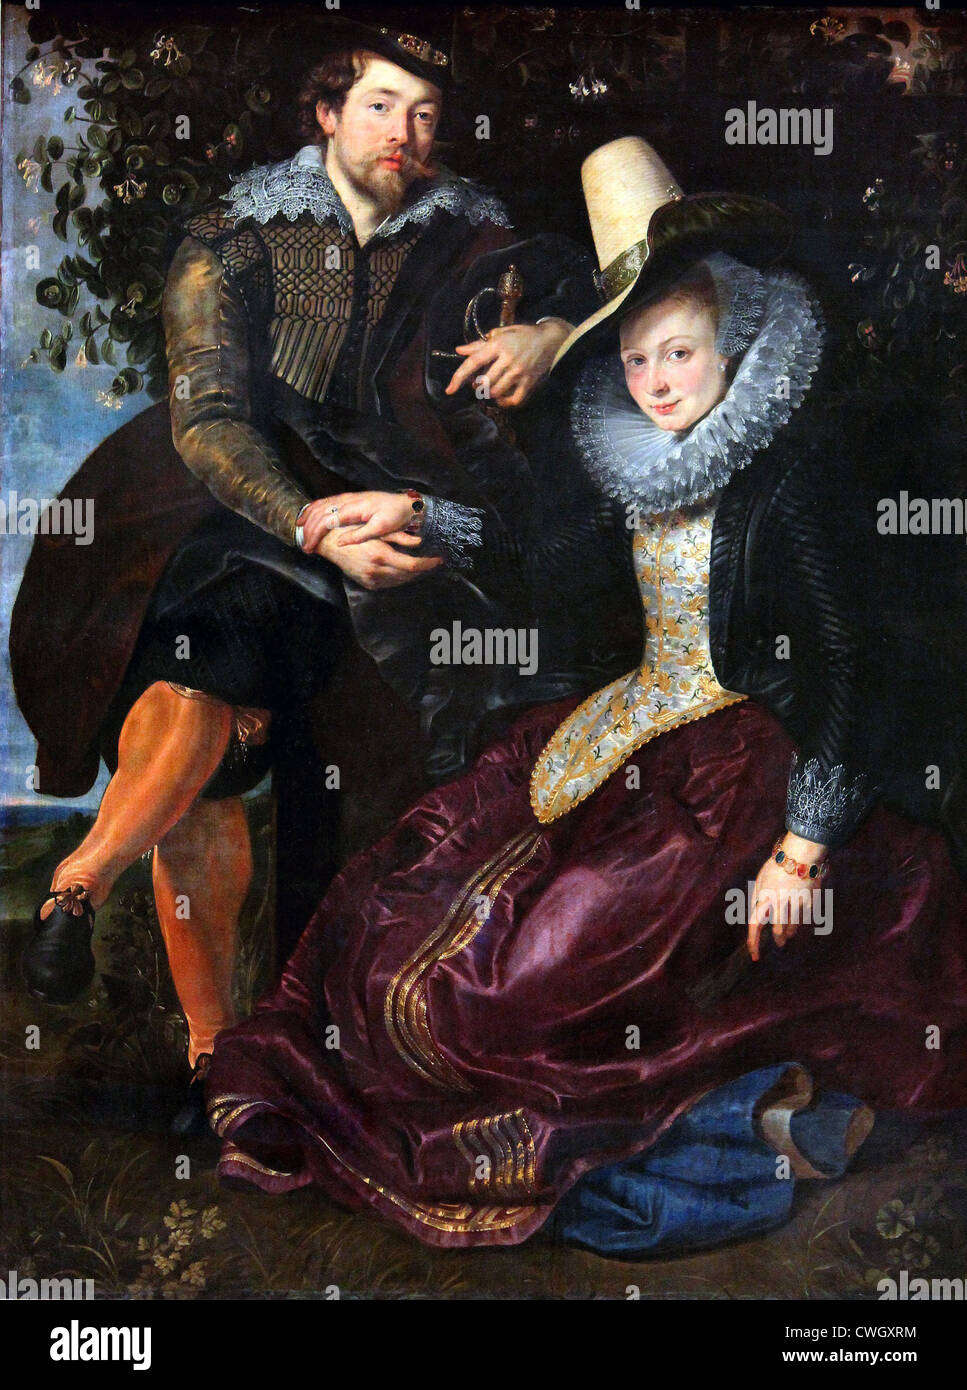 Rubens und Isabella Brant in der Honeysuckle Bower von Rubens Stockfoto